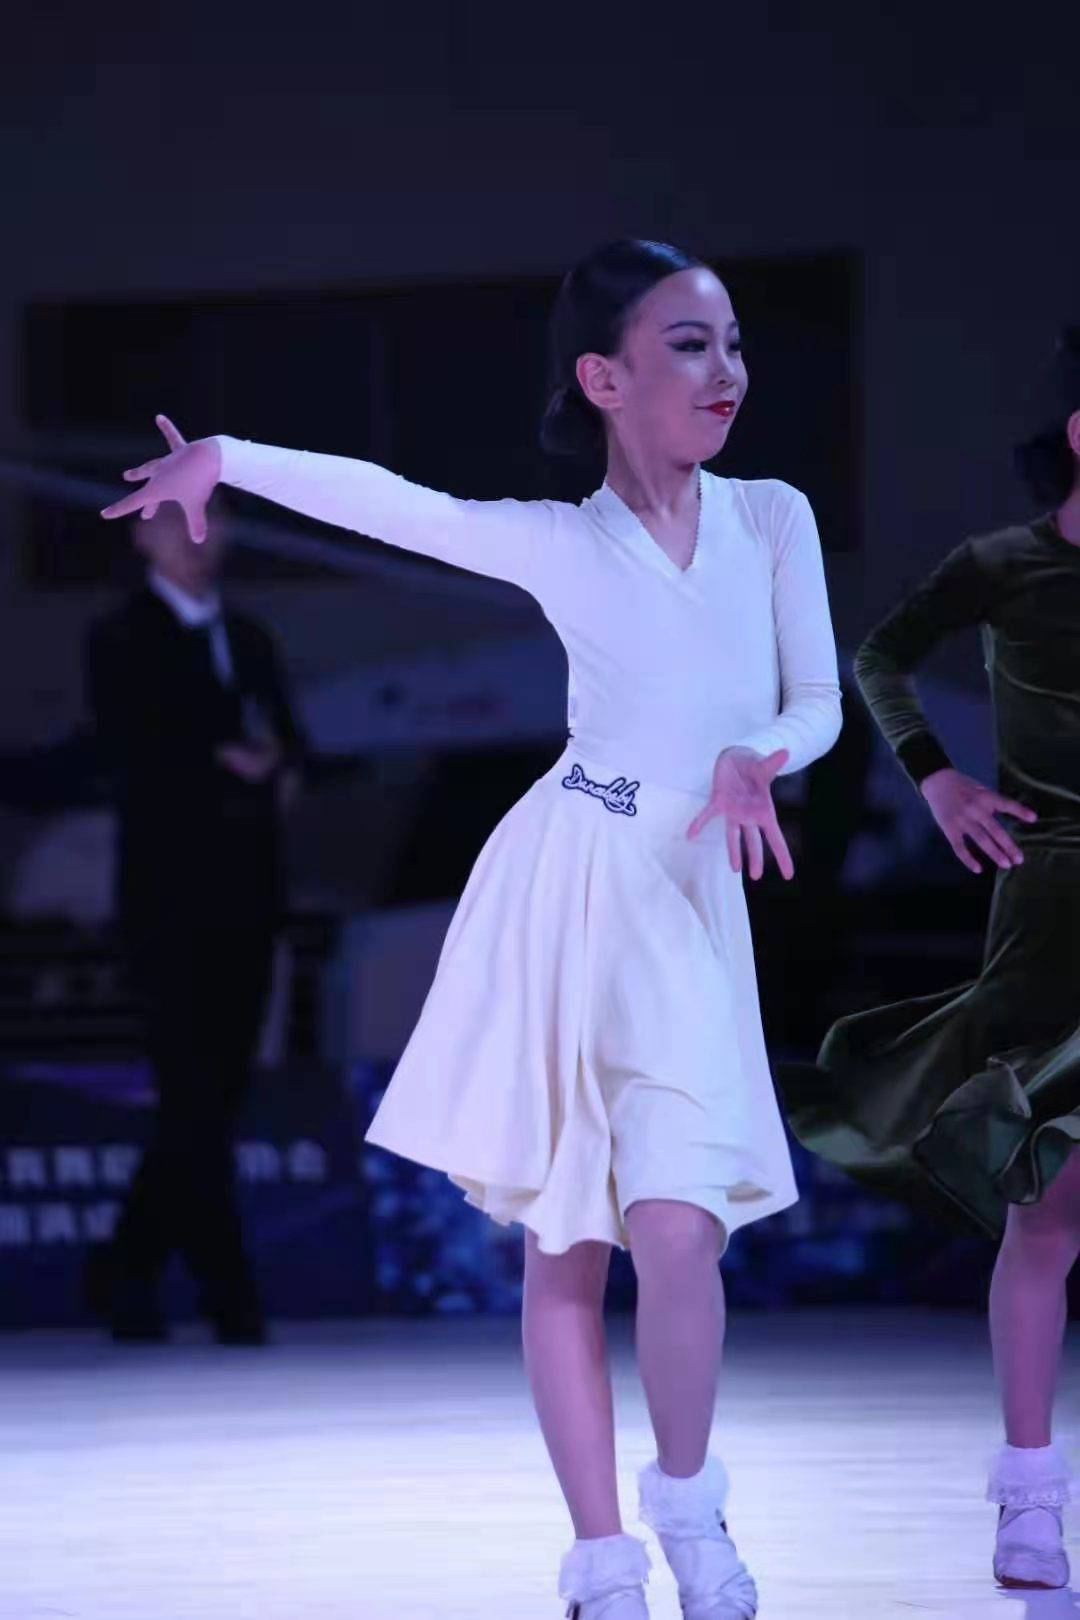 南京黑池舞蹈节图片